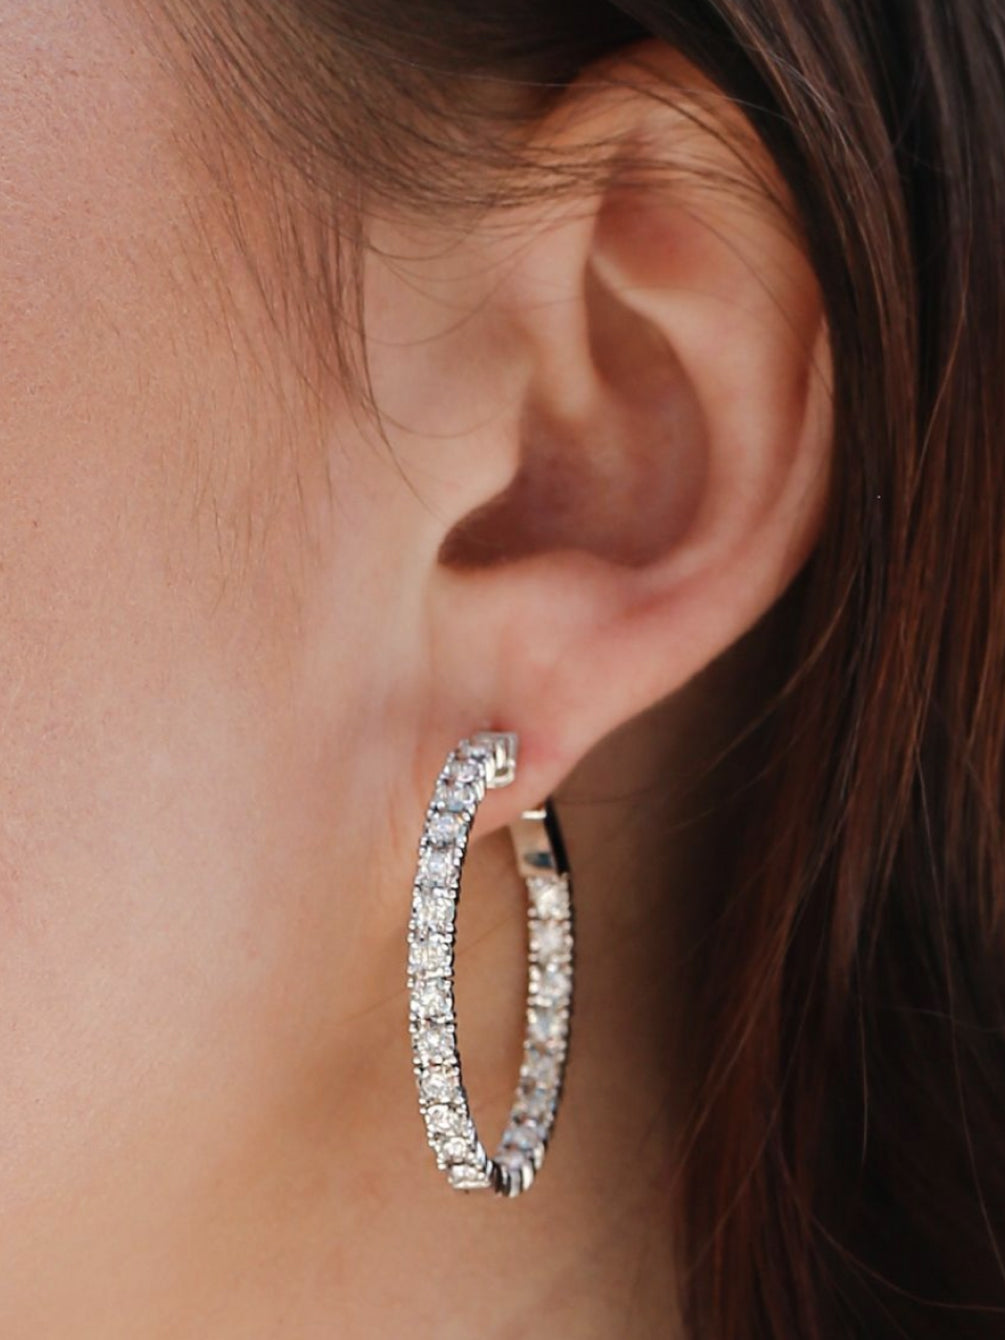 A beautiful diamond white gold hoop earring on a womans left ear lobe